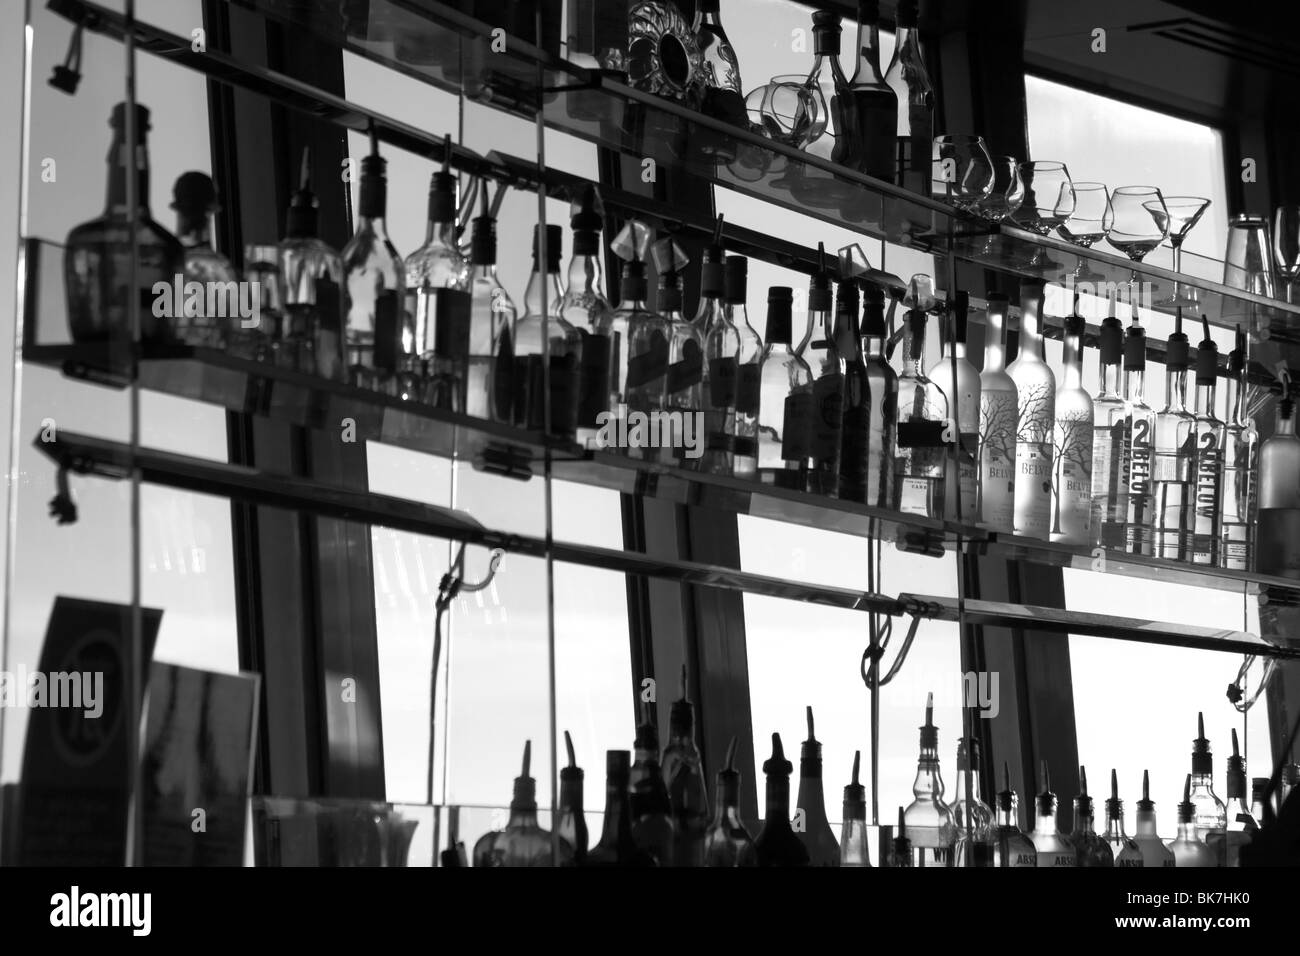 Spirit bottles on bar shelves Stock Photo